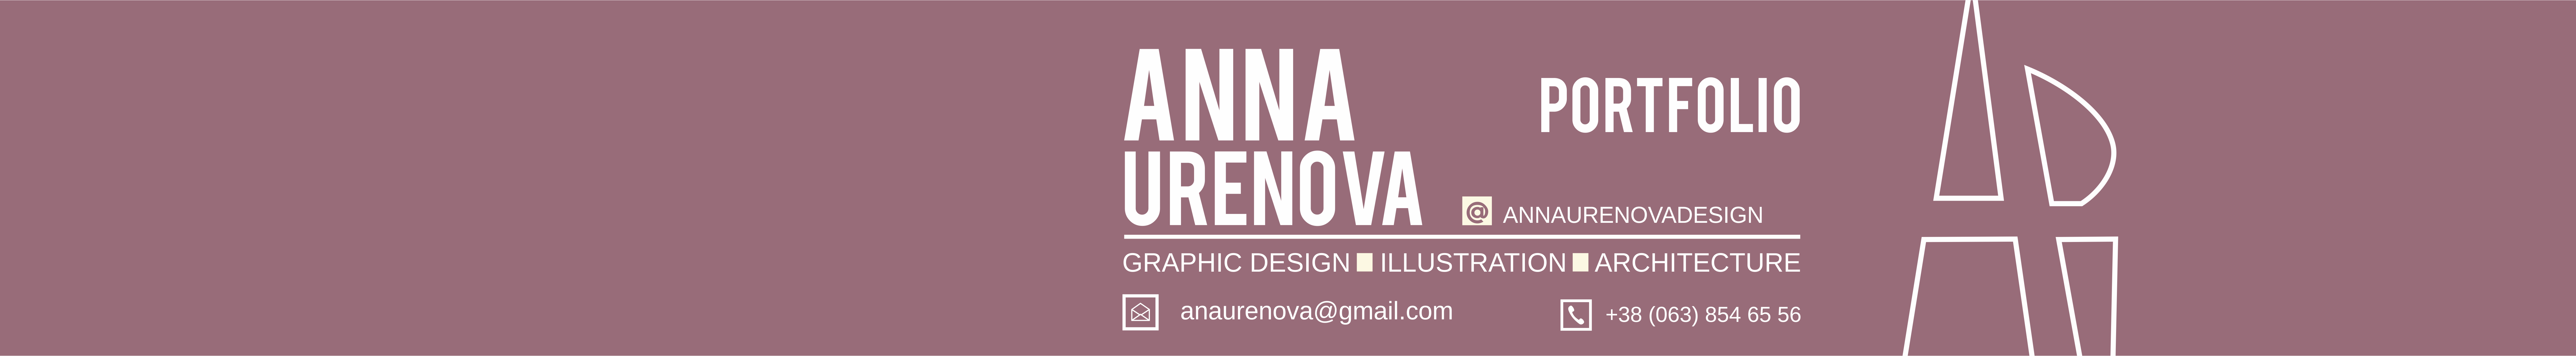 Profil-Banner von Anna Ureñova